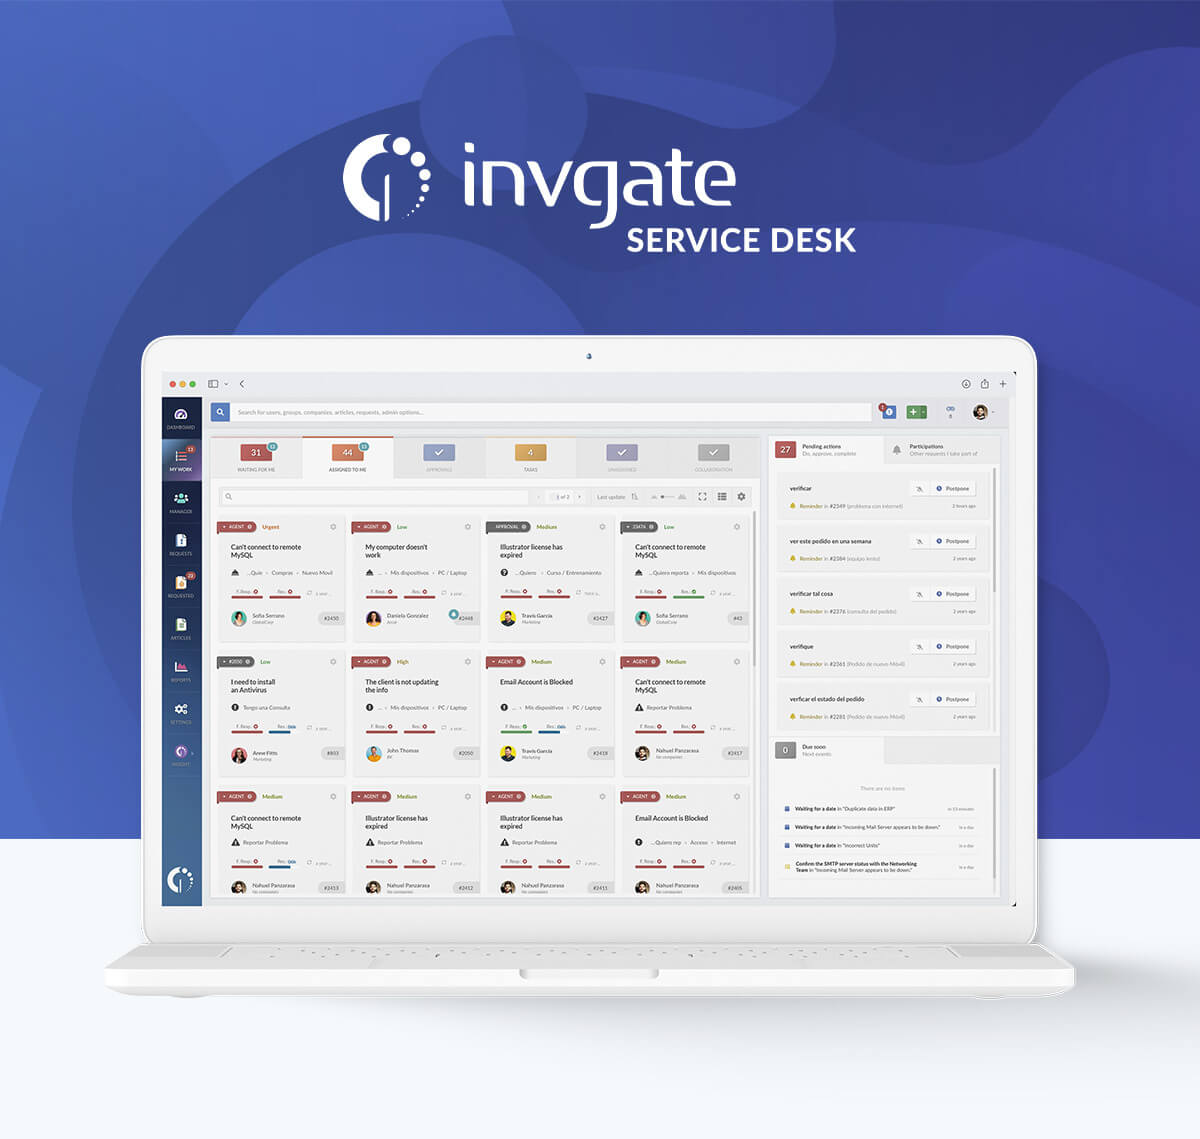 InvGate Service Desk: 5-minutes demo